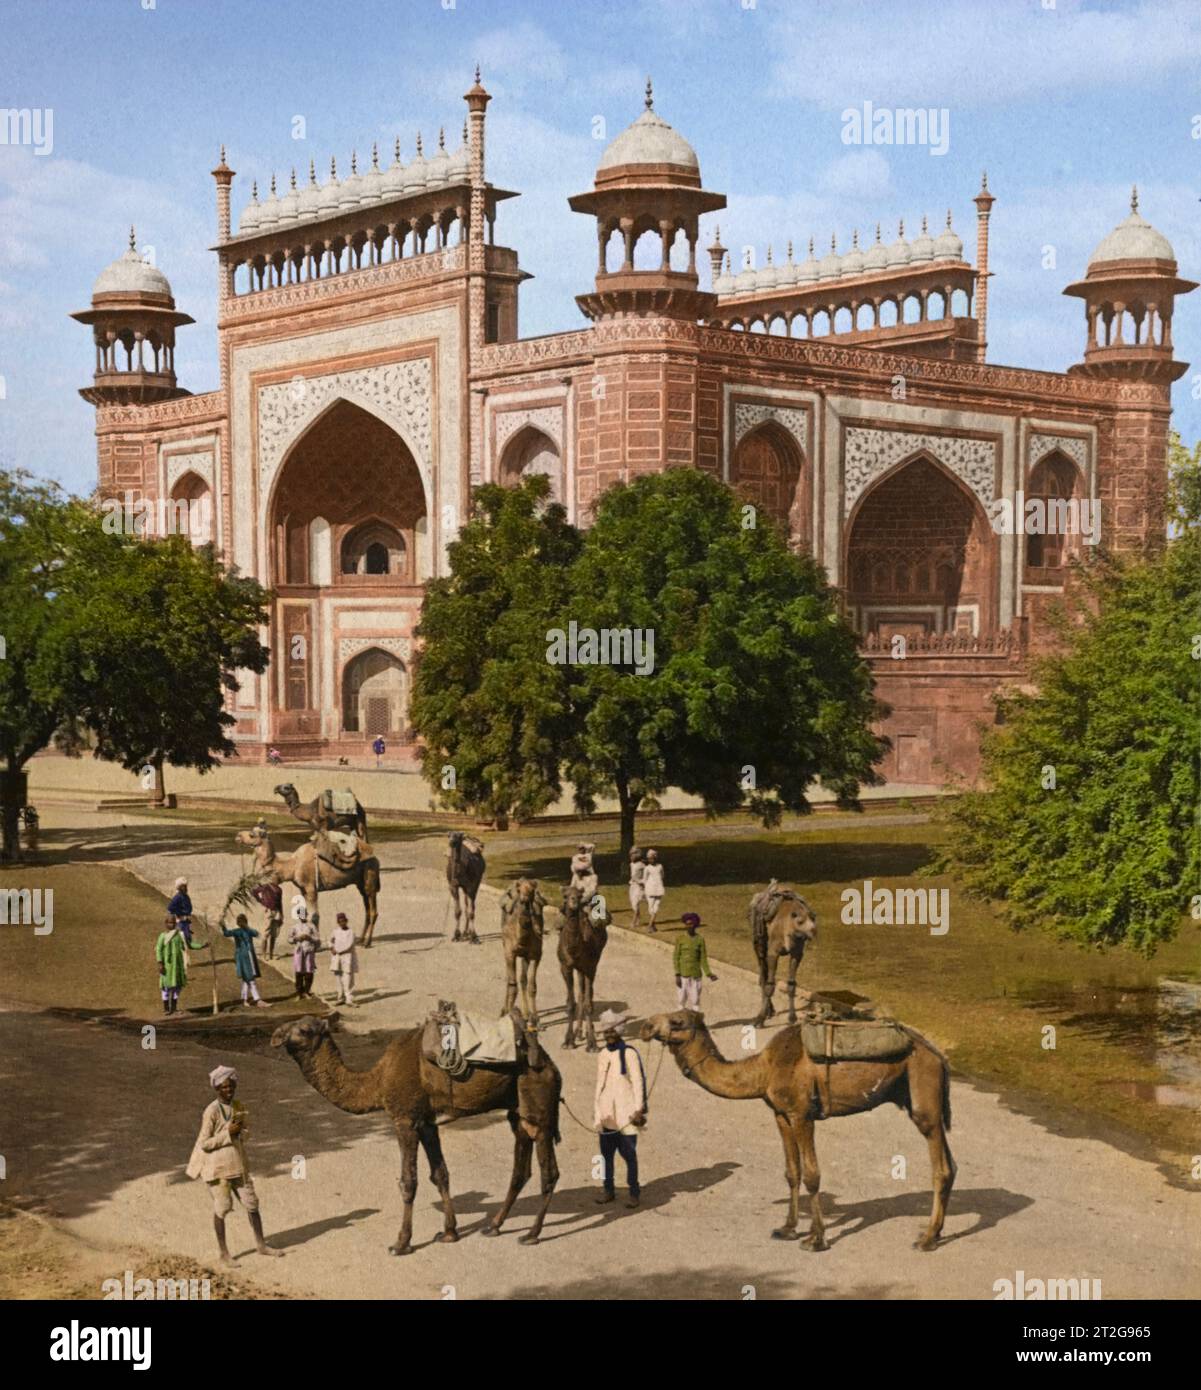 Les chameaux attendent du côté sud-est de Darwaza-i-Rauza (porte d'entrée) au célèbre Taj Mahal, Agra, Inde. 1903. Par Underwood & Underwood. Banque D'Images